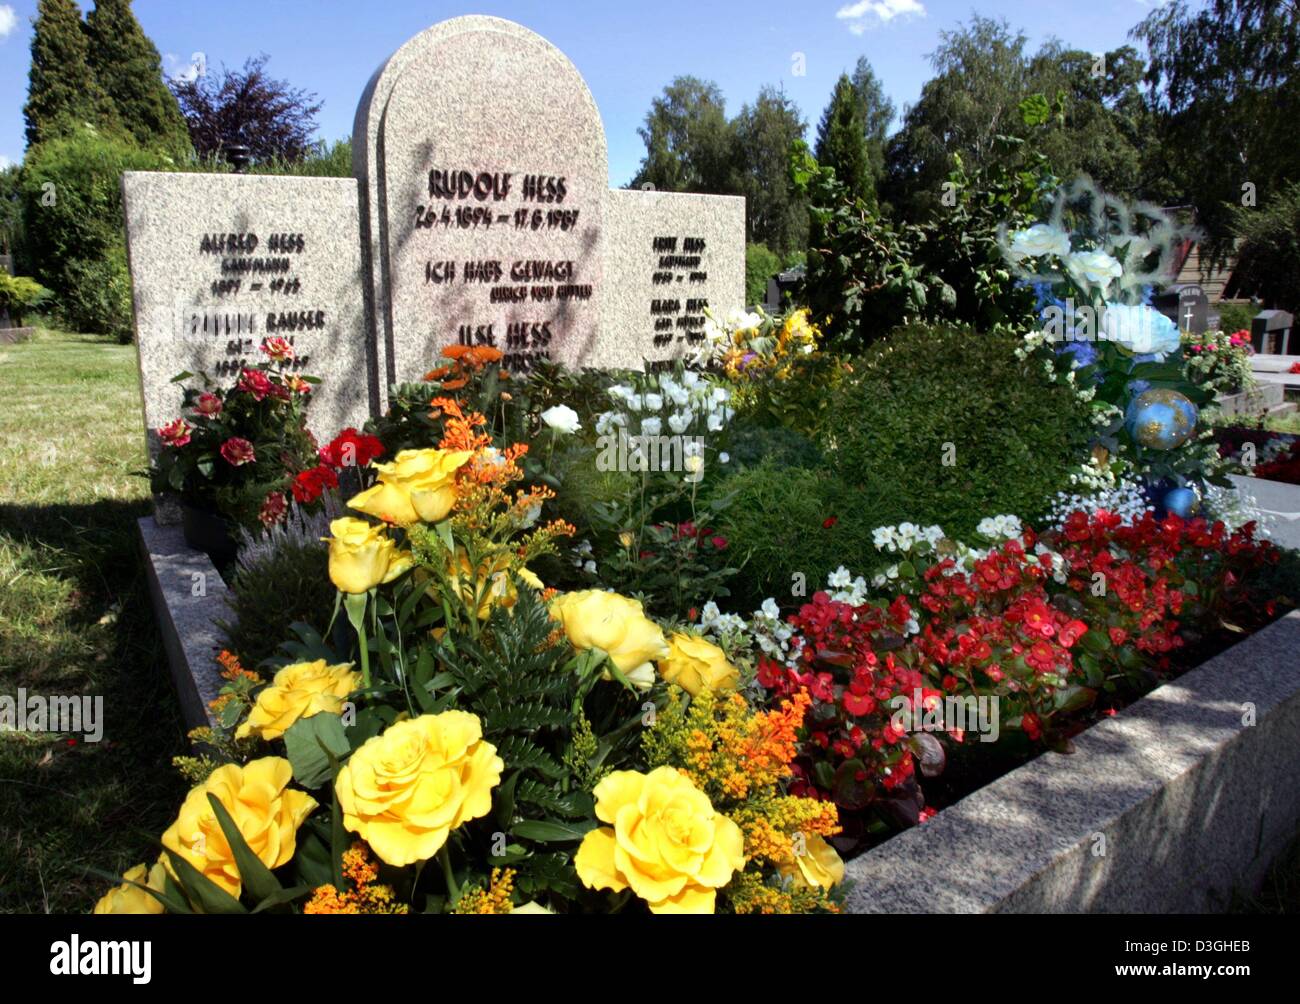 (Dpa) - ein Blick auf das Grab von Hitlers Stellvertreter Rudolf Heß in Wundsiedel, Deutschland, 18. August 2004. Hess war am 26. April 1894 geboren und starb am 17. August 1987. Jedes Jahr versammeln sich rund 2.500 Nazis in der kleinen Stadt Wundsiede zum Gedenken an Rudolf Heß "Friedensflieger" (Frieden Pilot). Stockfoto